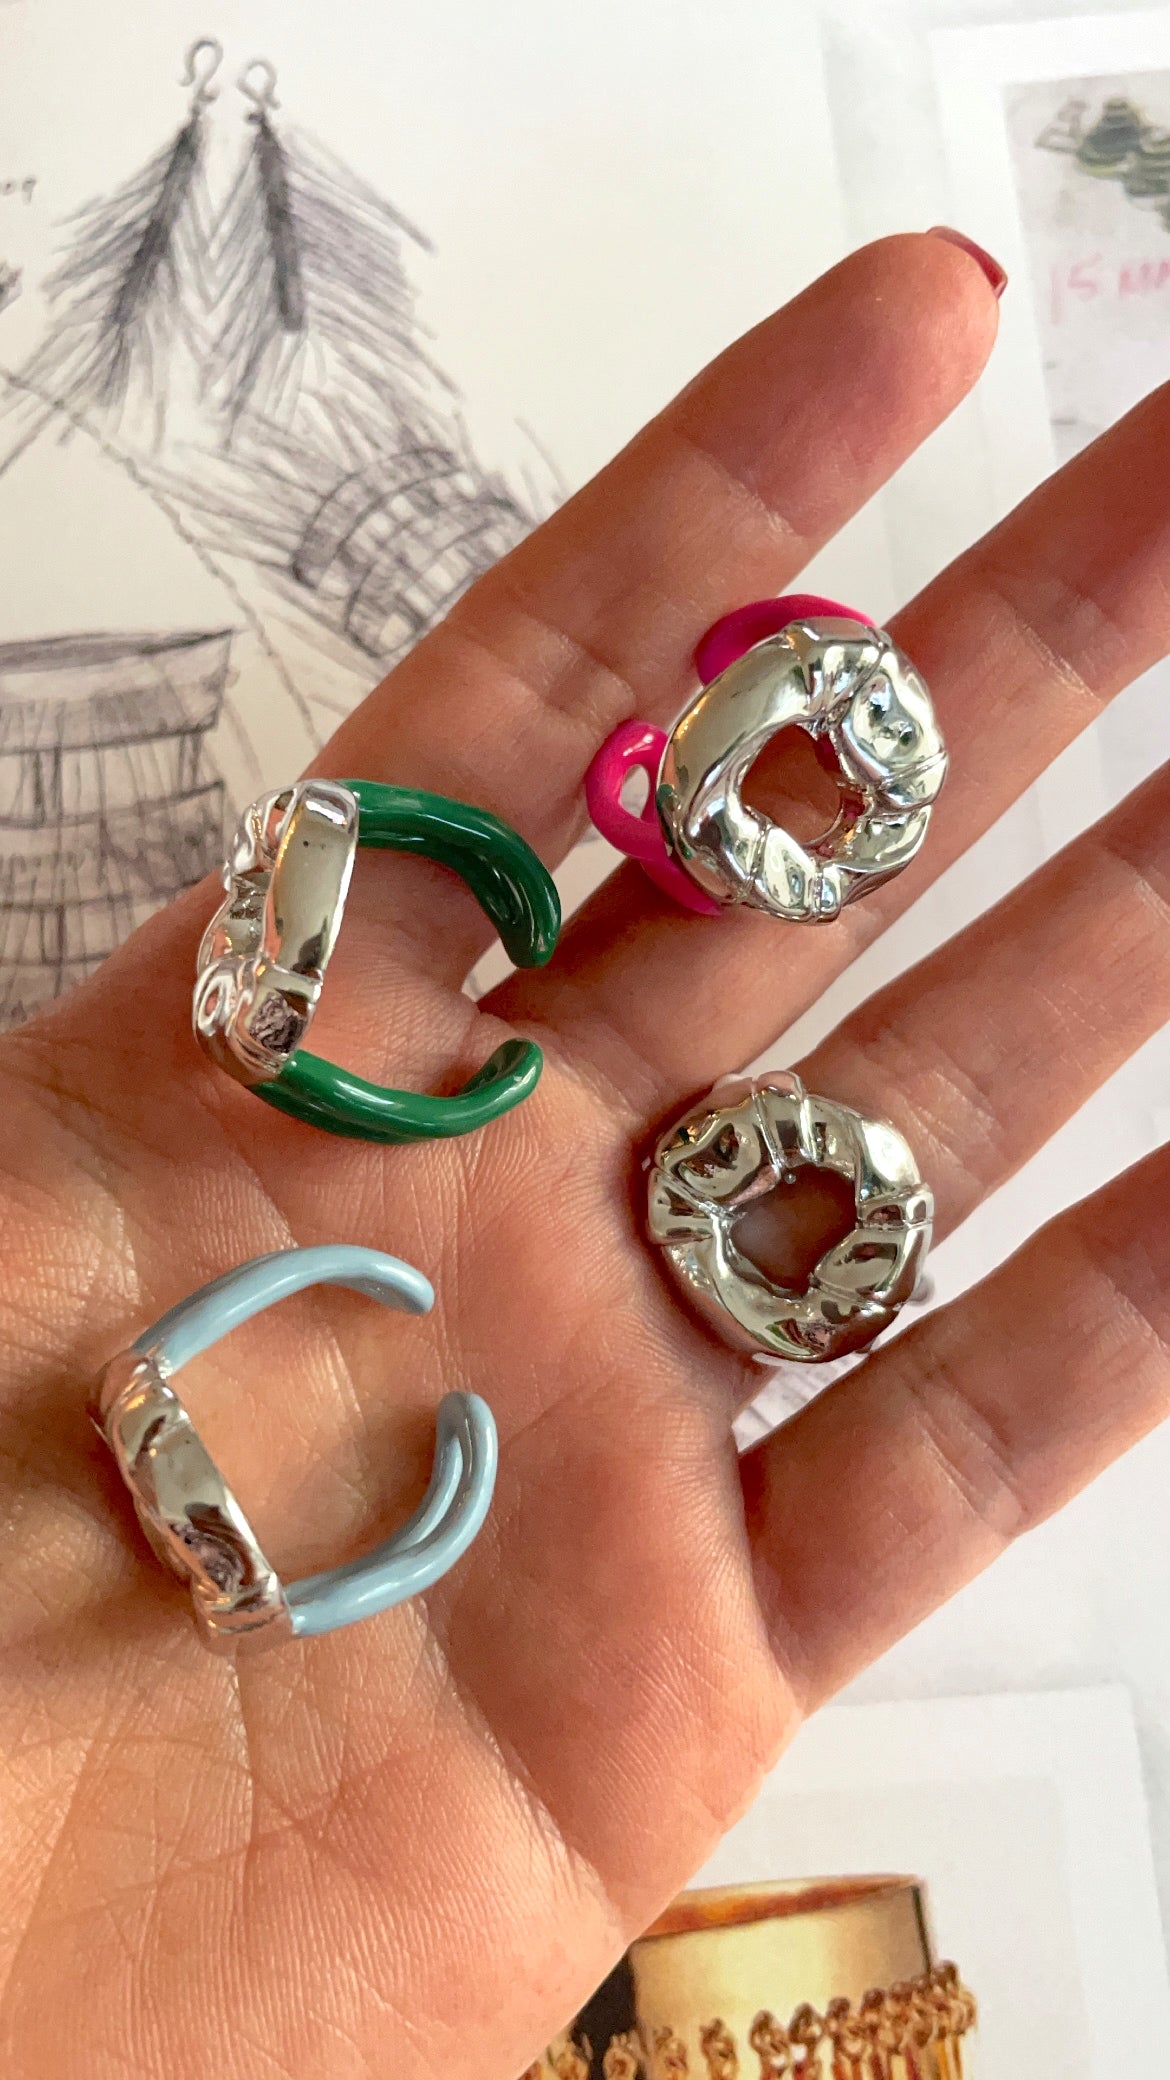 Irregulars adjustable colored rings